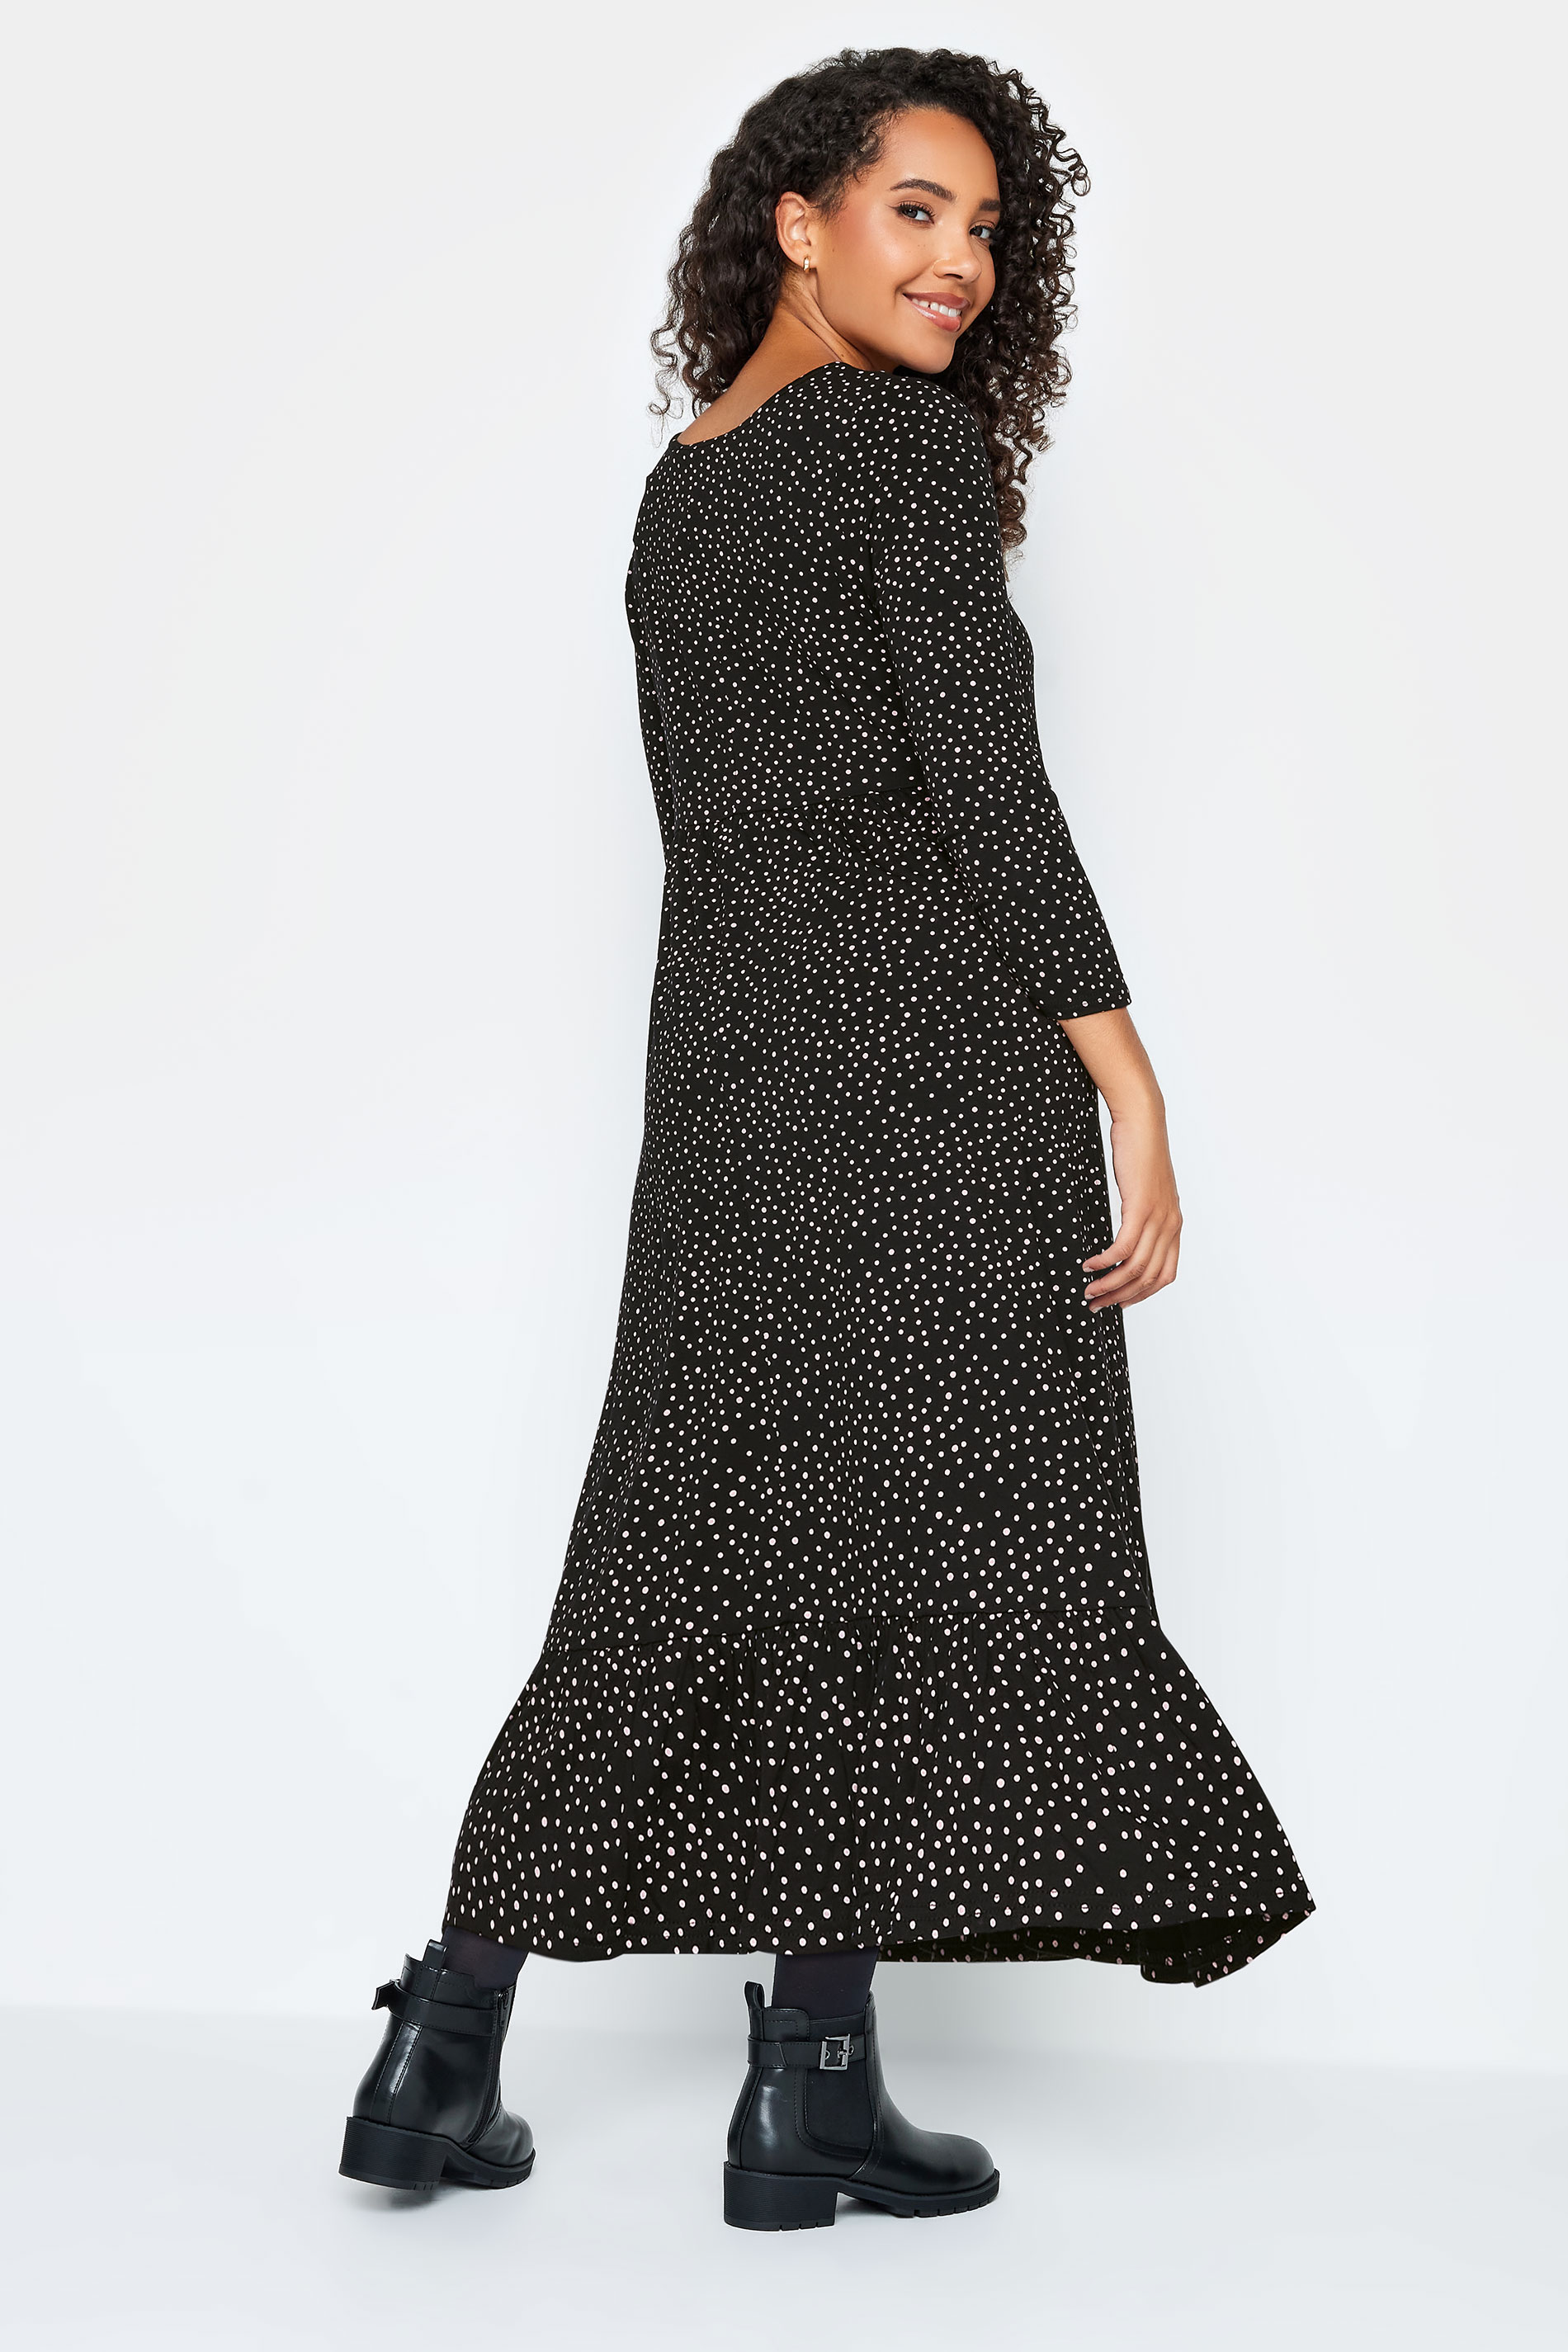 M&Co Petite Black Spot Print Midi Dress | M&Co 3